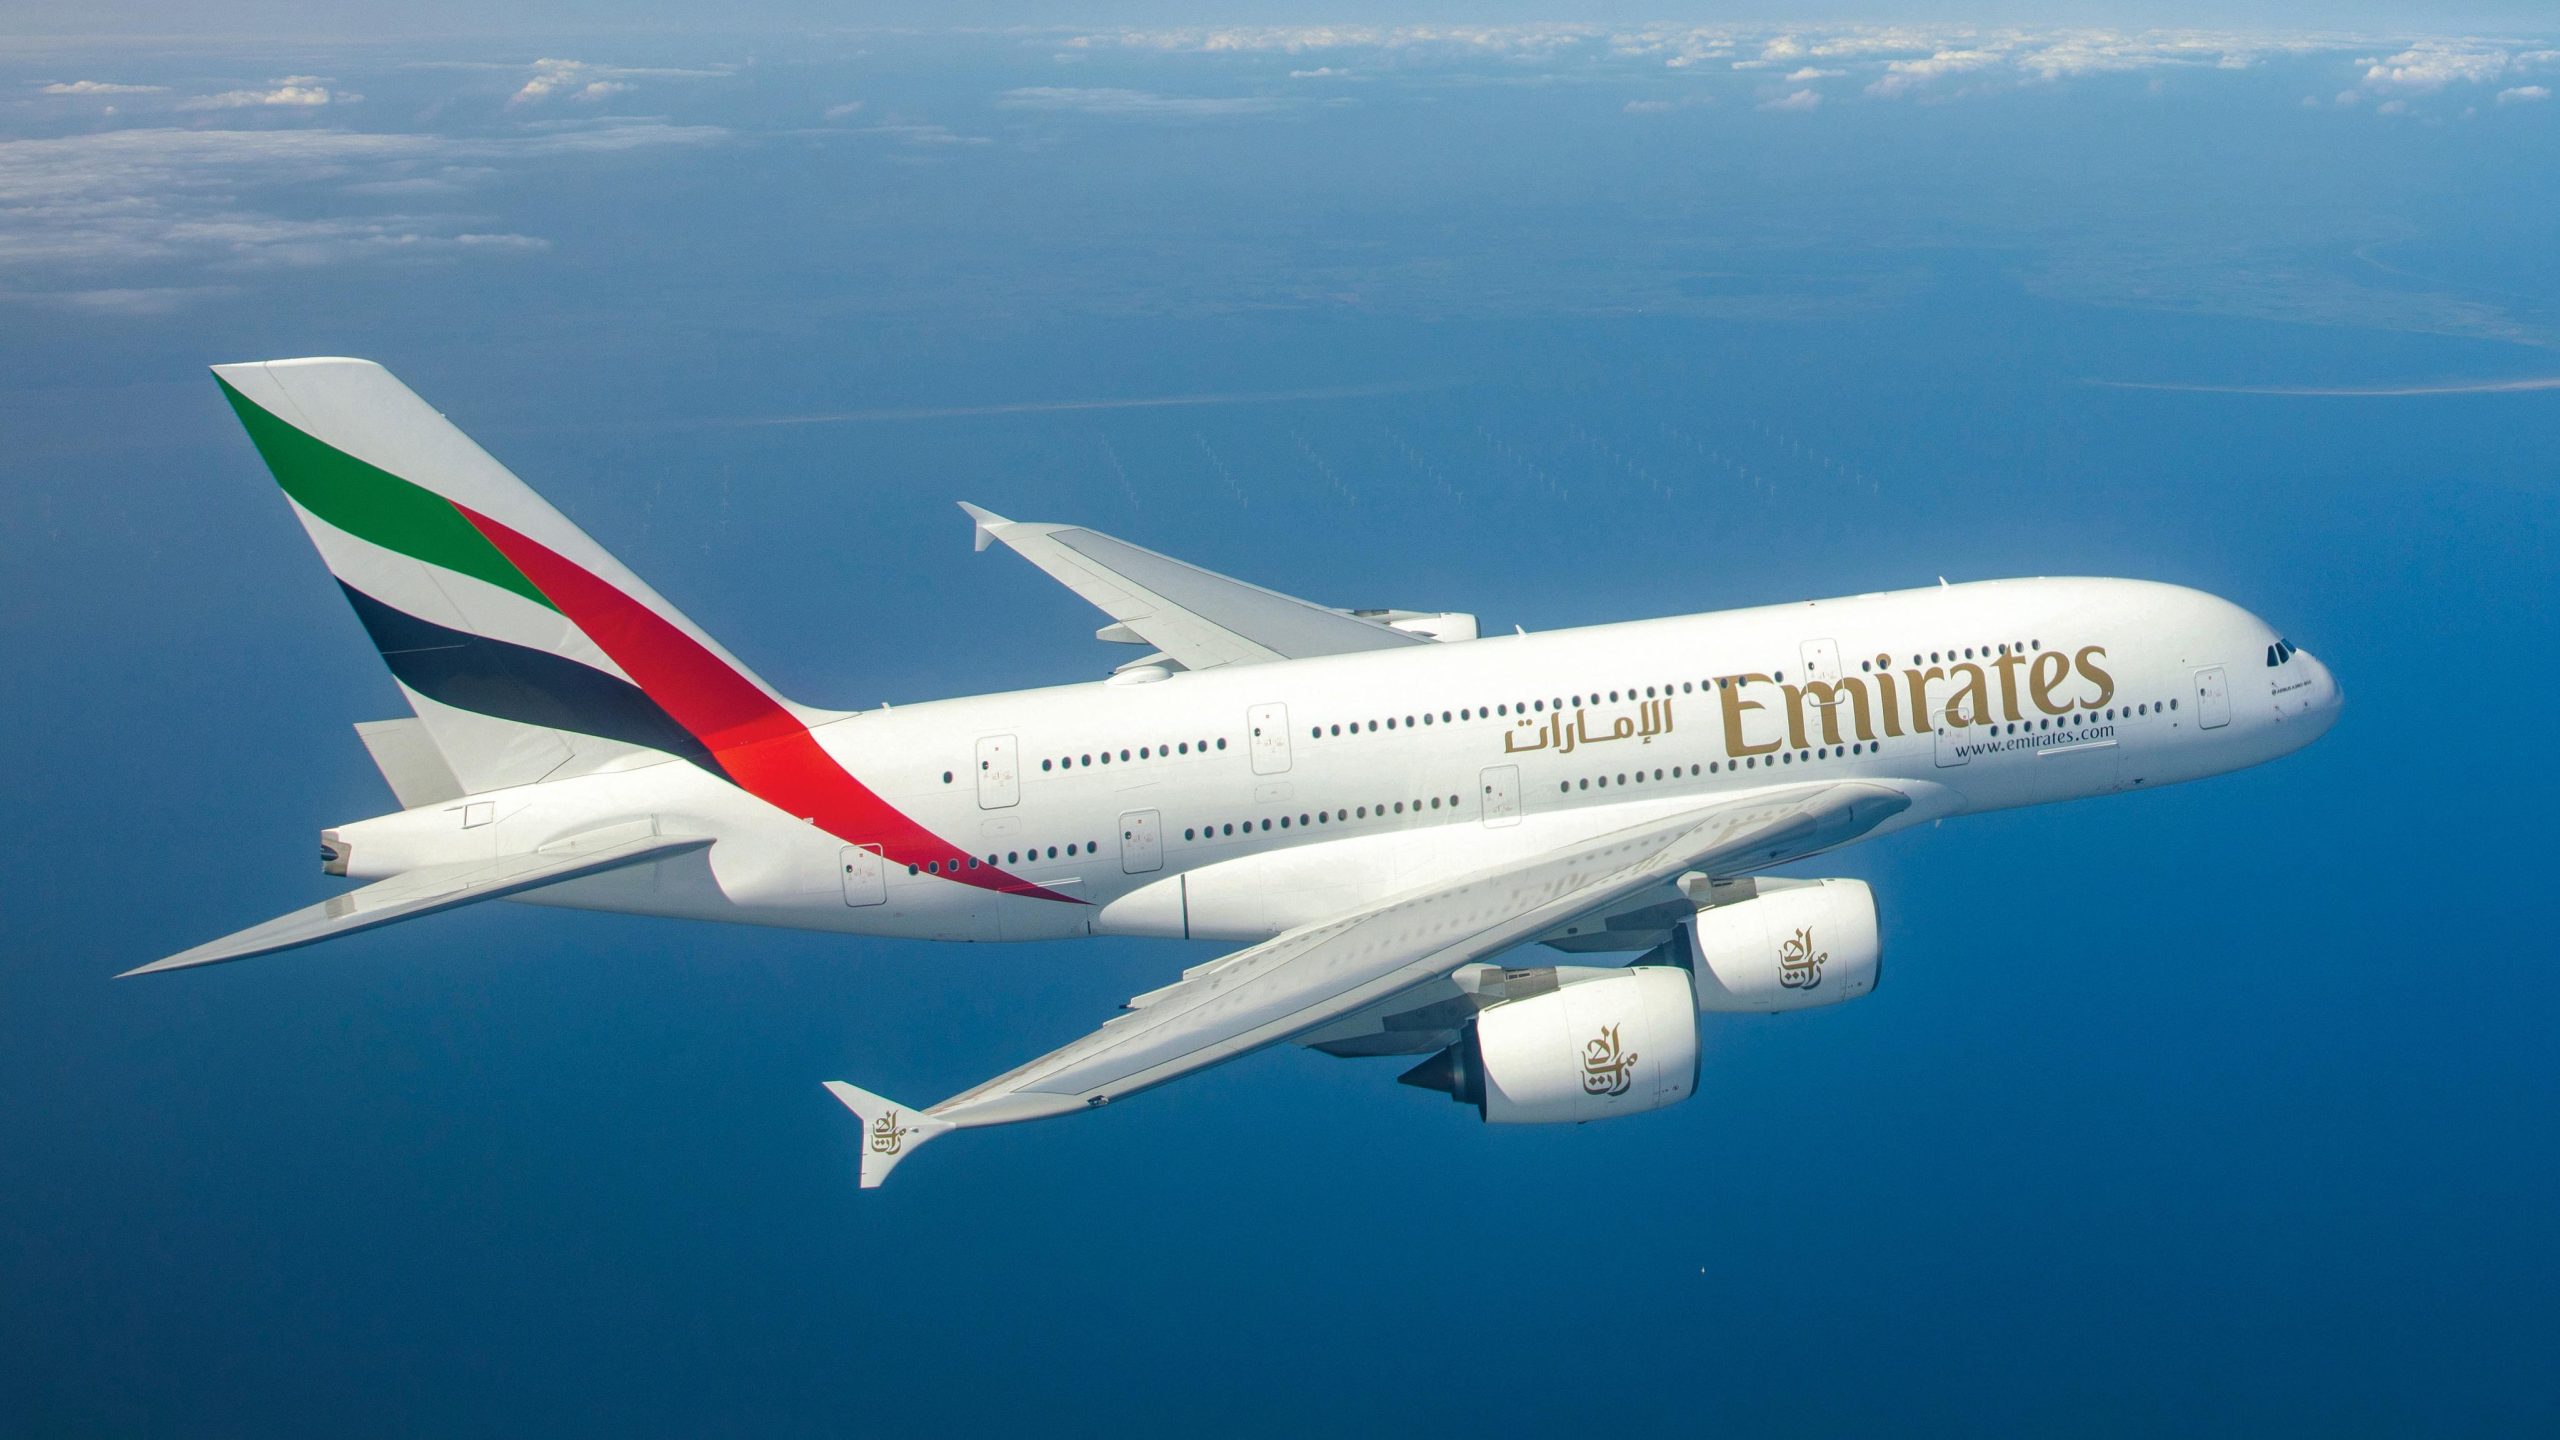 Emirates започват да приемат Биткойн (BTC)